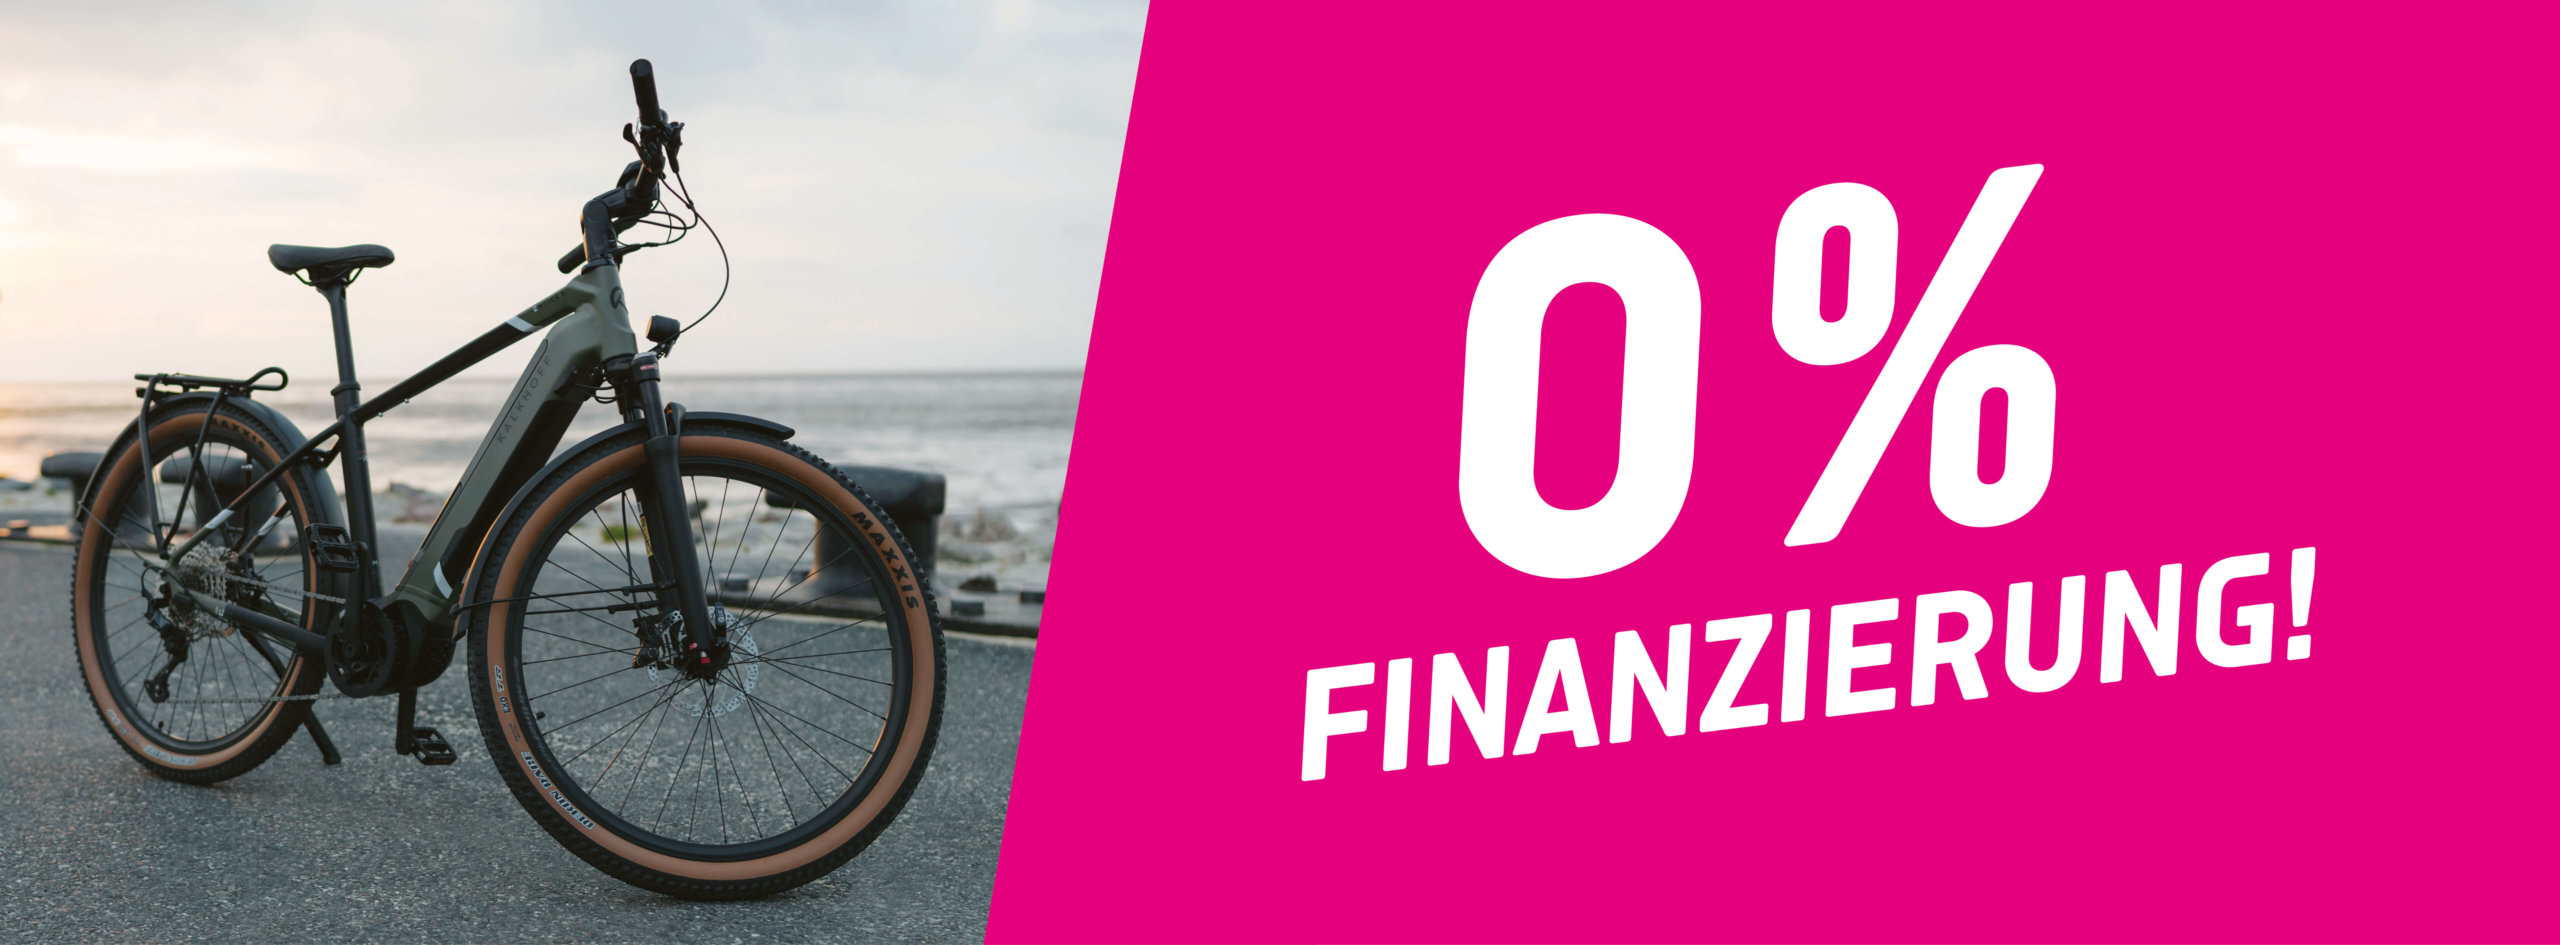 Grafik: Oben Magenta mit Schrift "0% Finanzierung", unten Abbildung eines E-Bikes